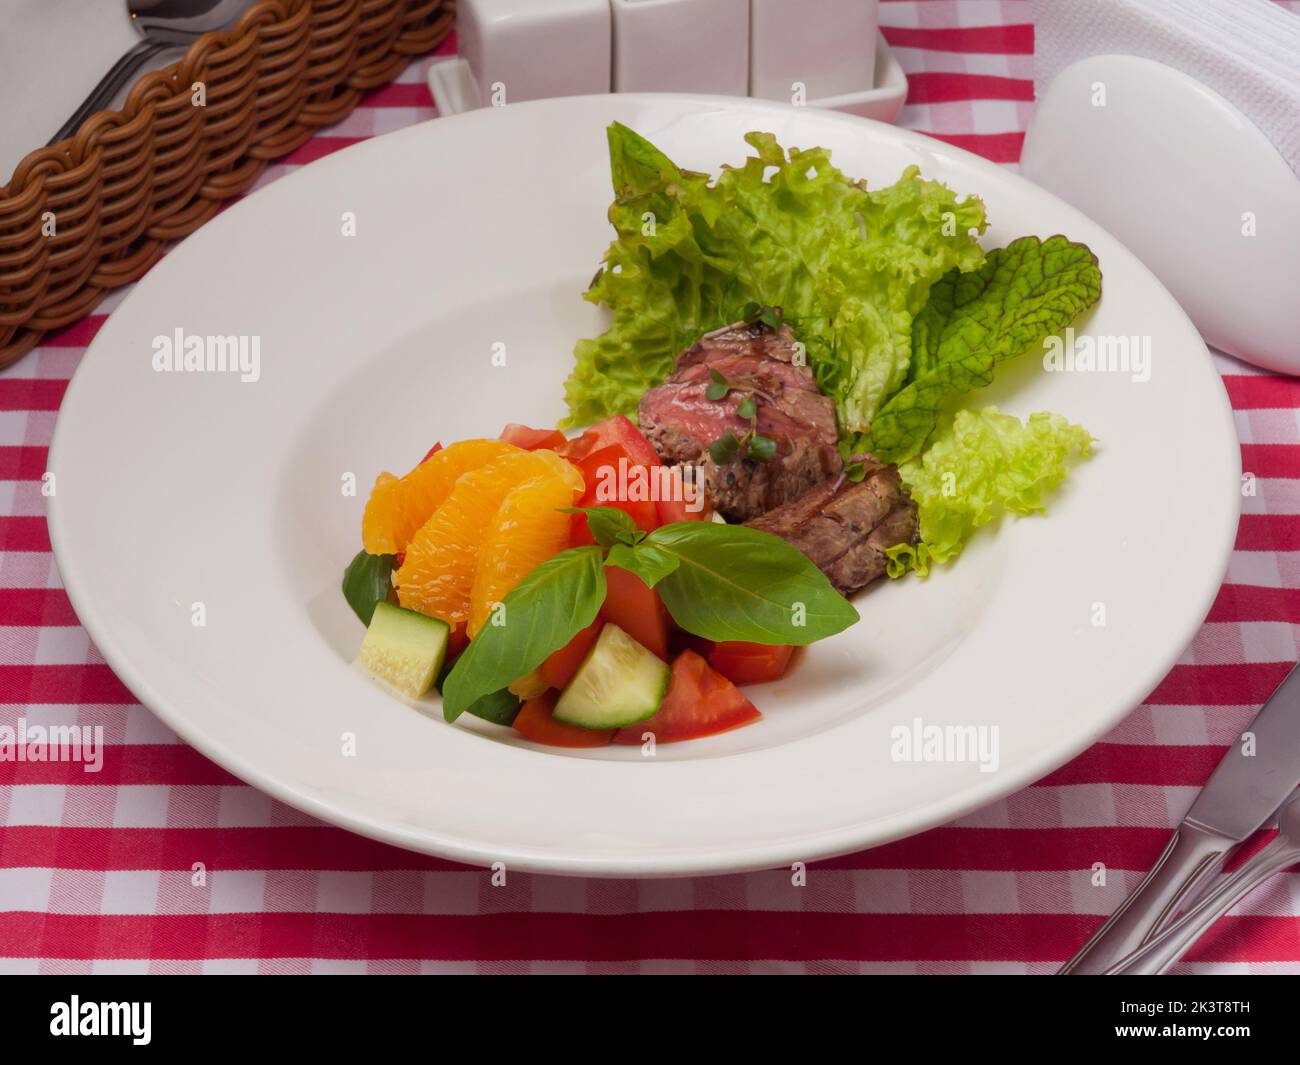 Leckerer Salat mit Gemüse, Rindfleisch und Orange auf einem weißen Teller Stockfoto